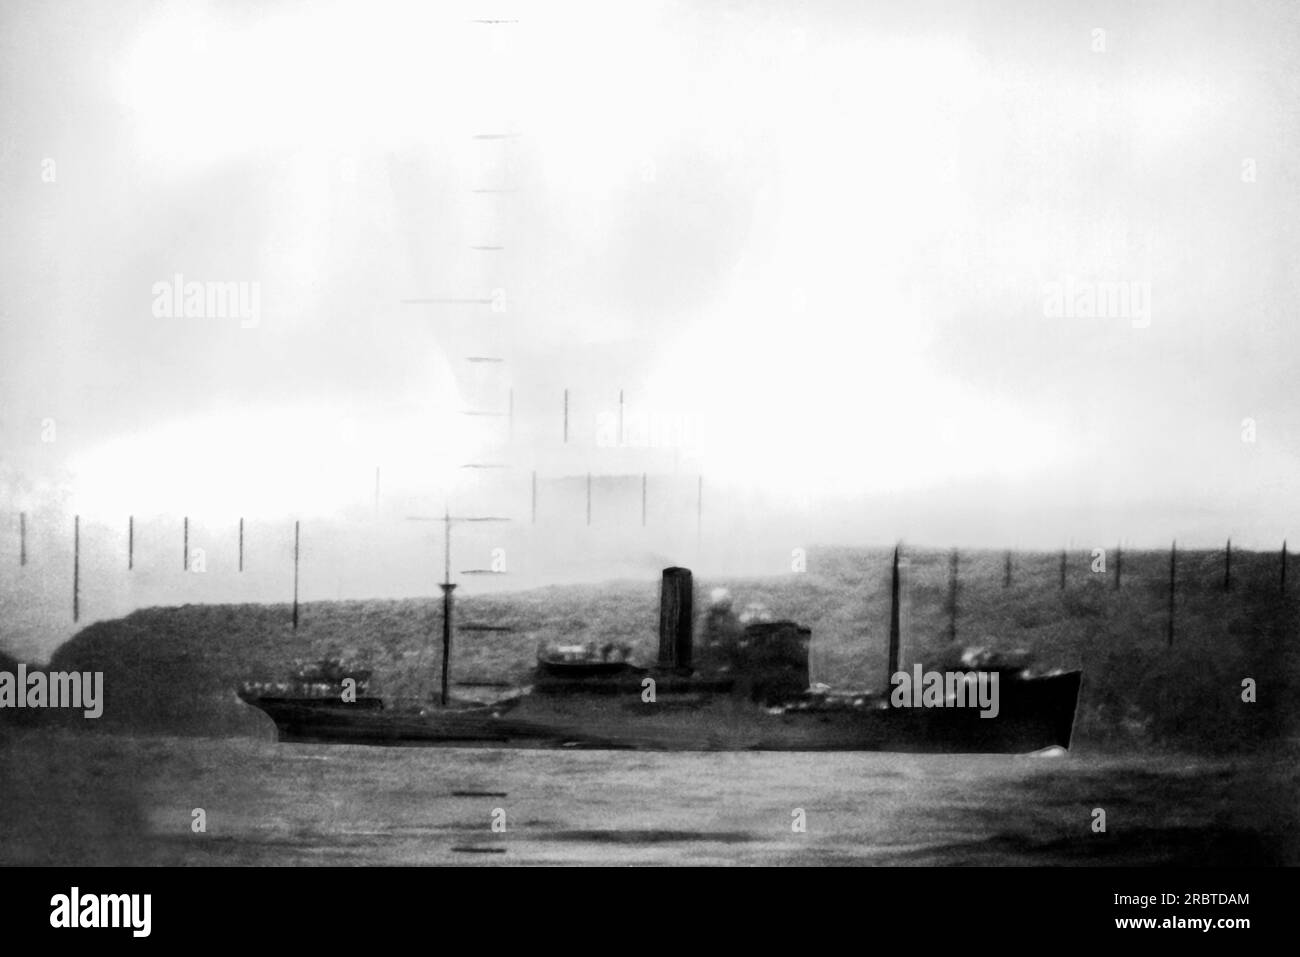 Oceano Pacifico, 23 agosto 1943 Una foto scattata attraverso un periscopio di un cargo giapponese in acque controllate dal Giappone pochi secondi prima che il siluro di un sottomarino della US Navy lo inviasse in fondo al mare. Foto Stock